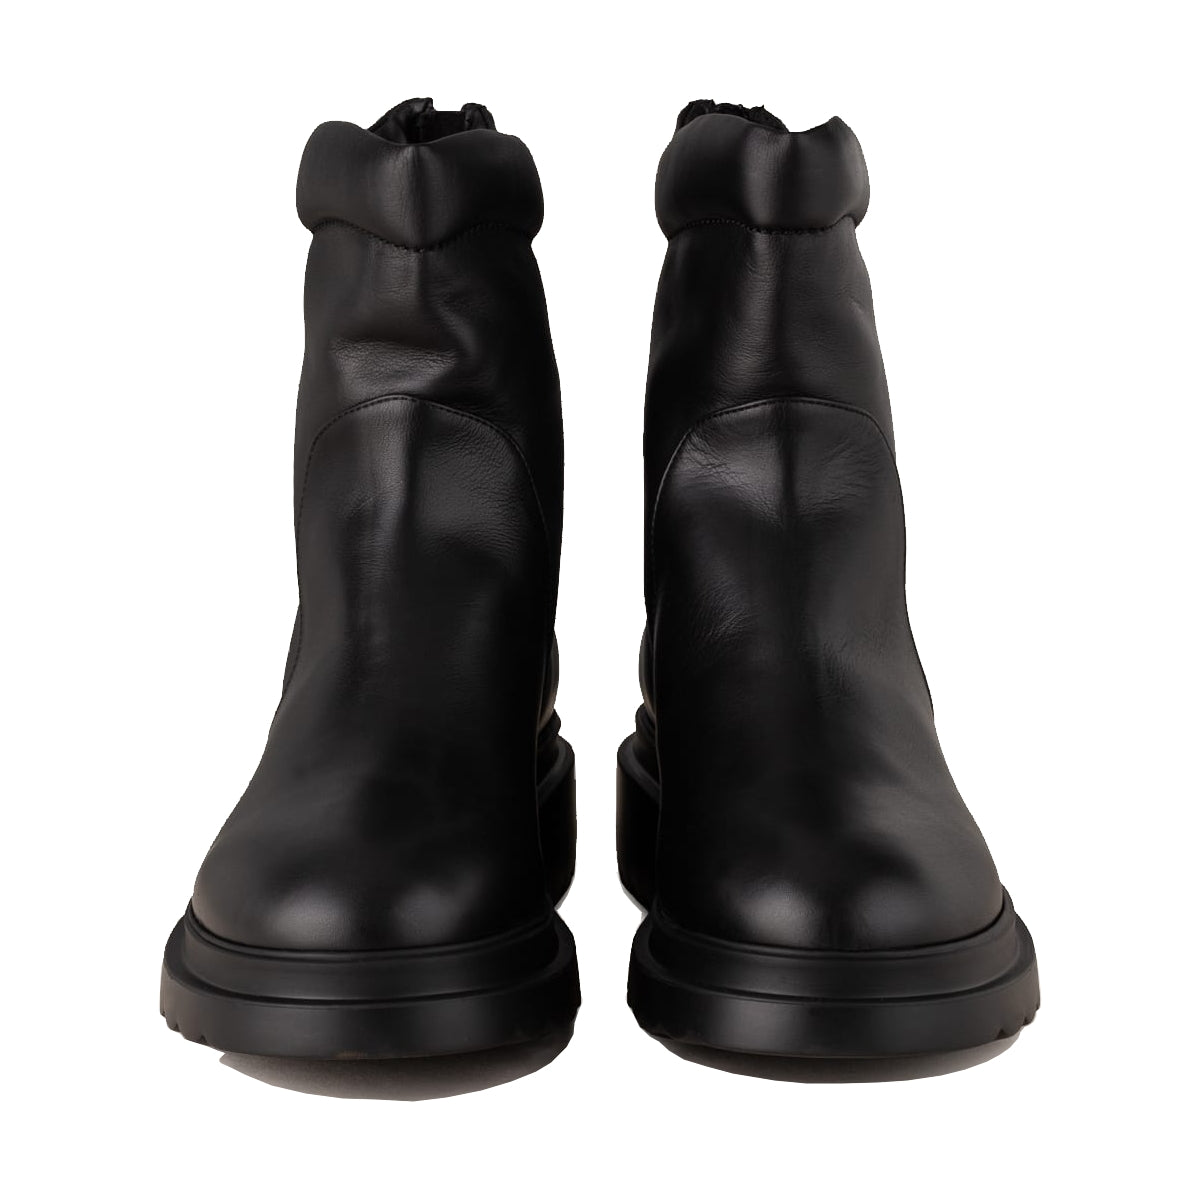 Pomme d´or boots rey in schwarzen Glattleder. Sportive Stiefelette mit Sneakers Leisten von Pomme d´or online kaufen. Low boots mit Reißverschluss und 3cm hoher Profilsohle aus der neuen Pomme d´or Kollektion.